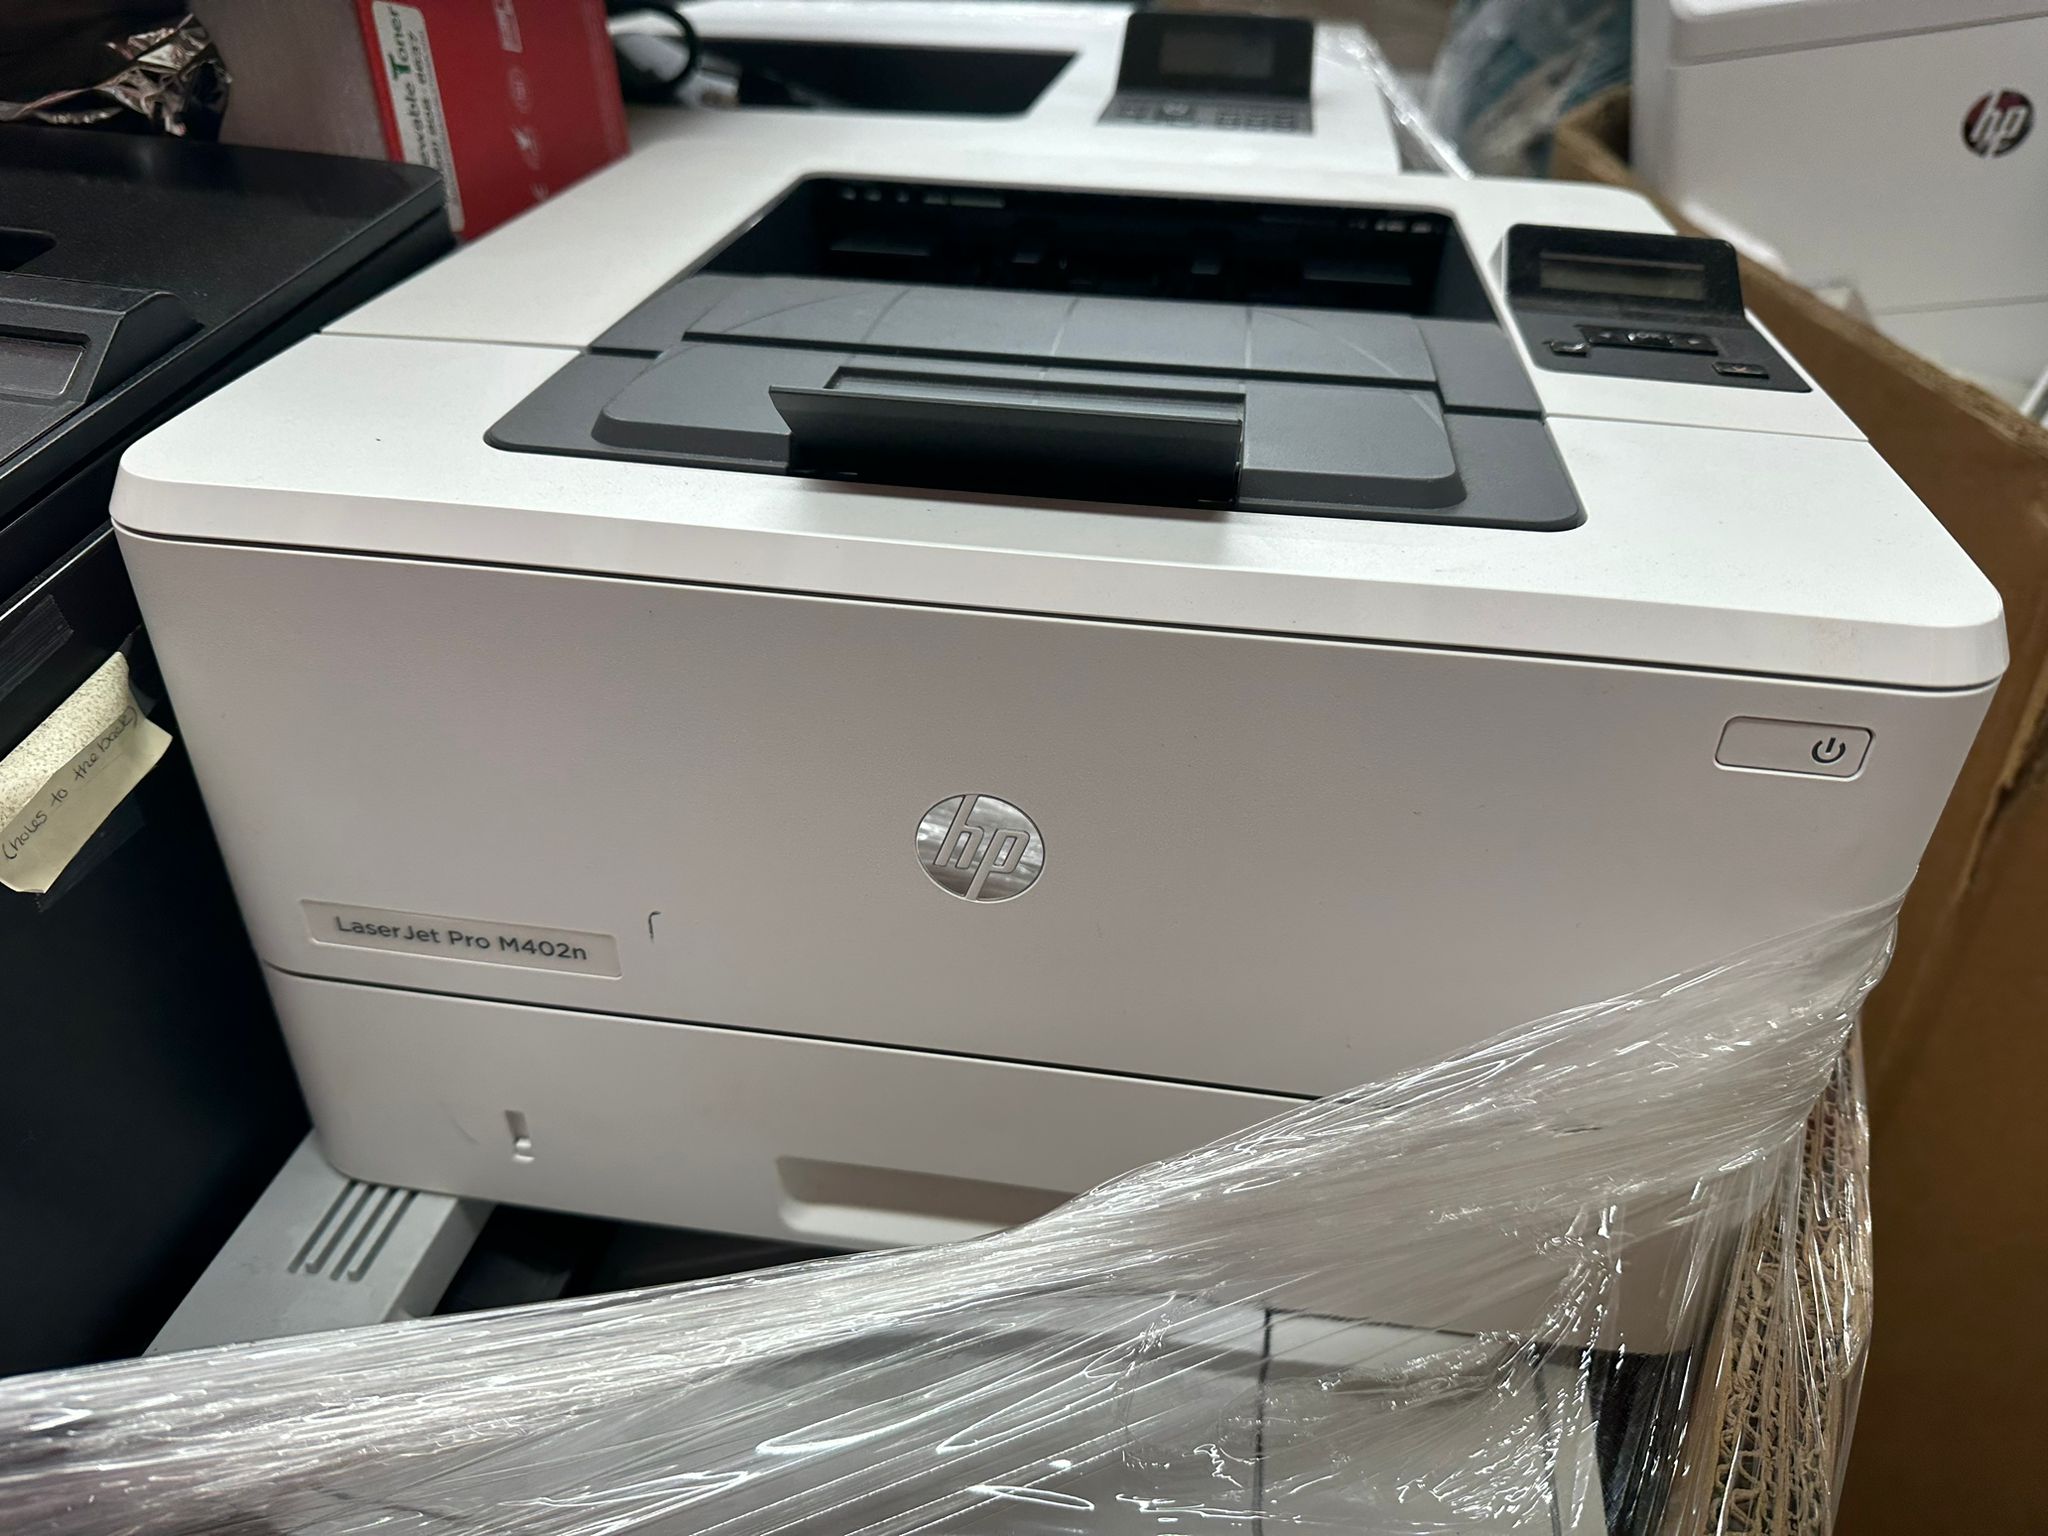 HP laser jet pro M402n Printer